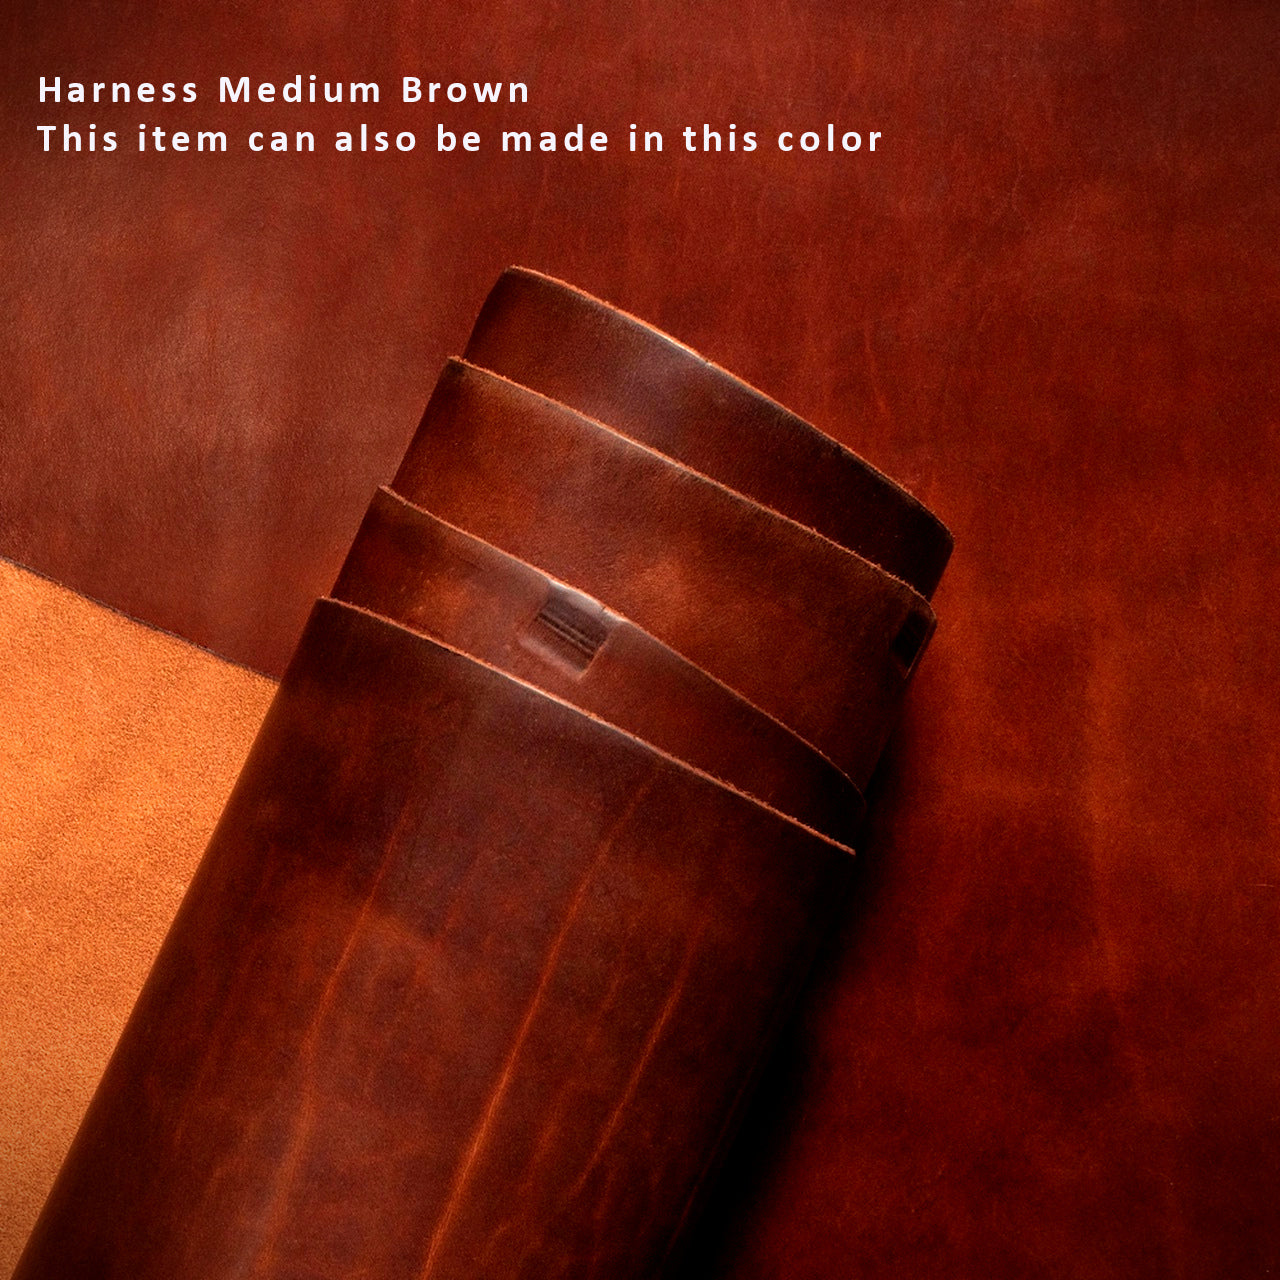 #color_harness med brown